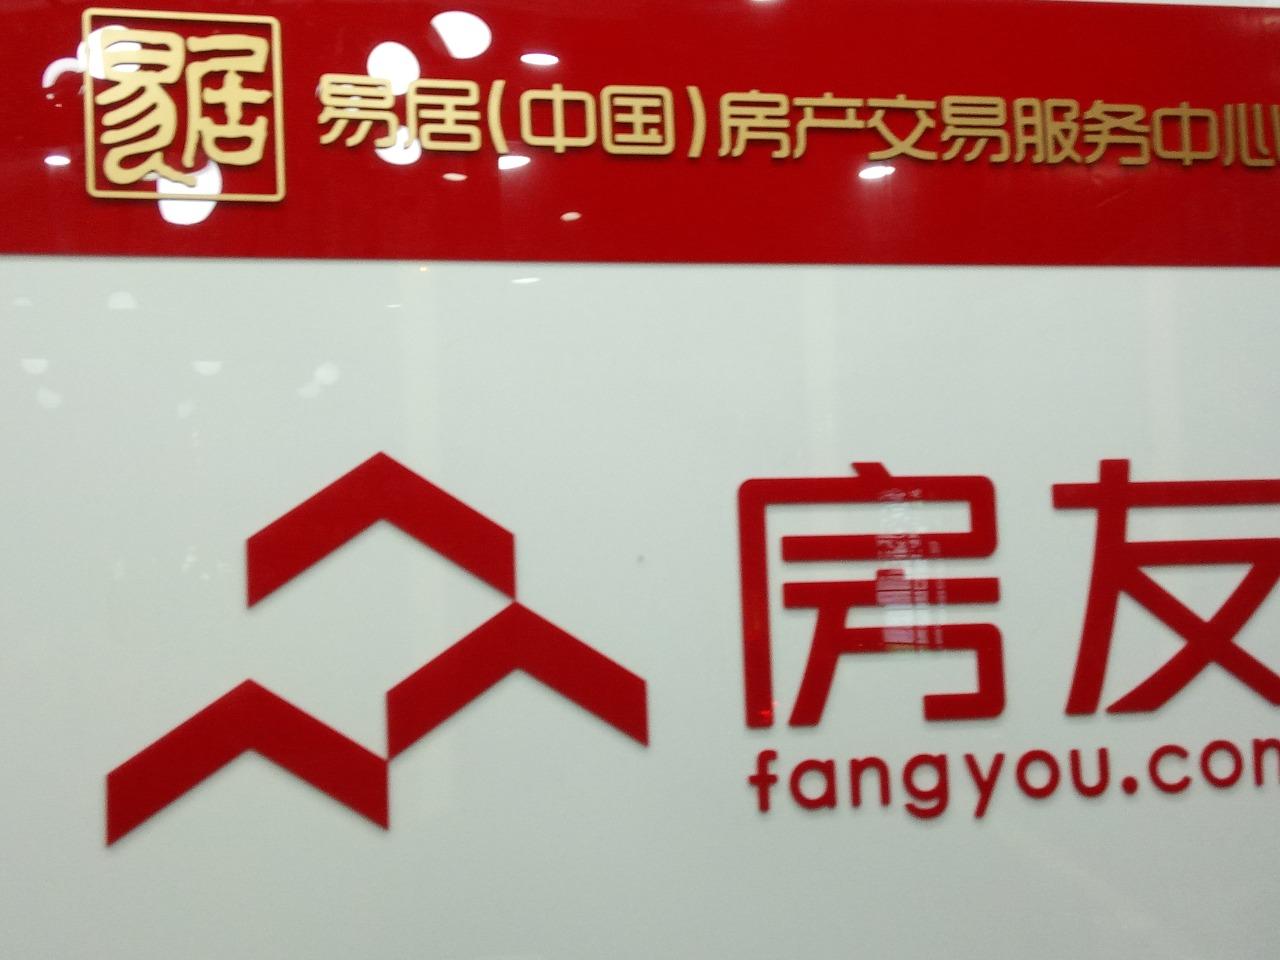 上海易居房地产交易服务有限公司